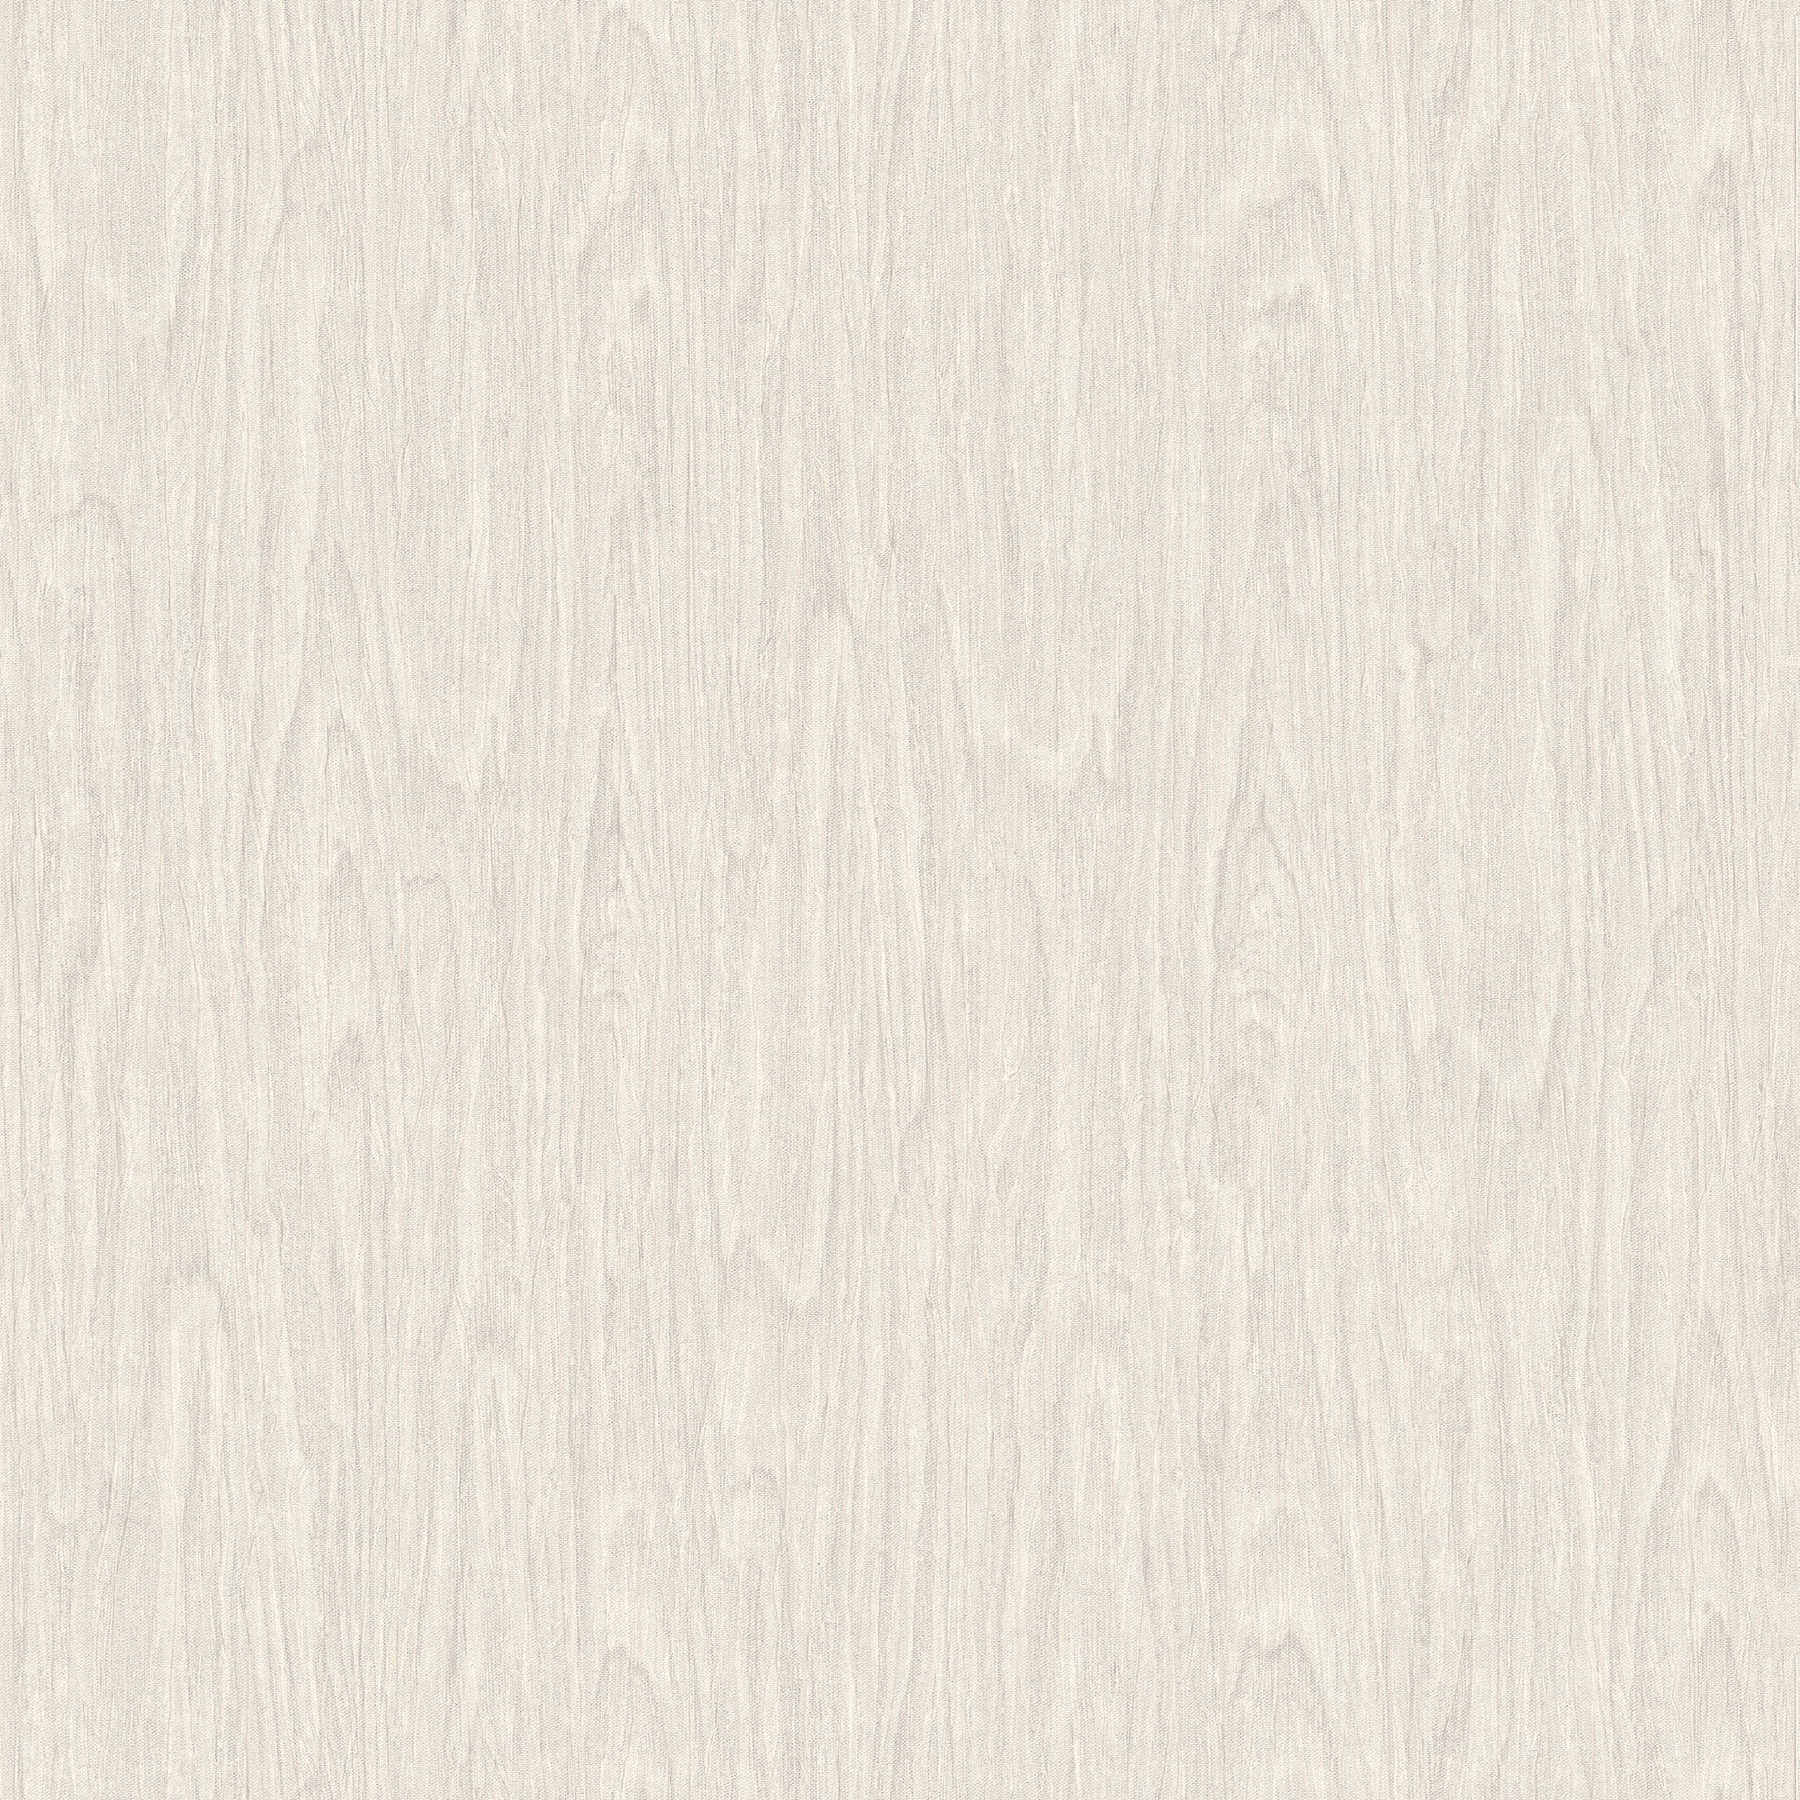 VERSACE Home Tapete realistische Holz Optik – Beige, Creme, Weiß
